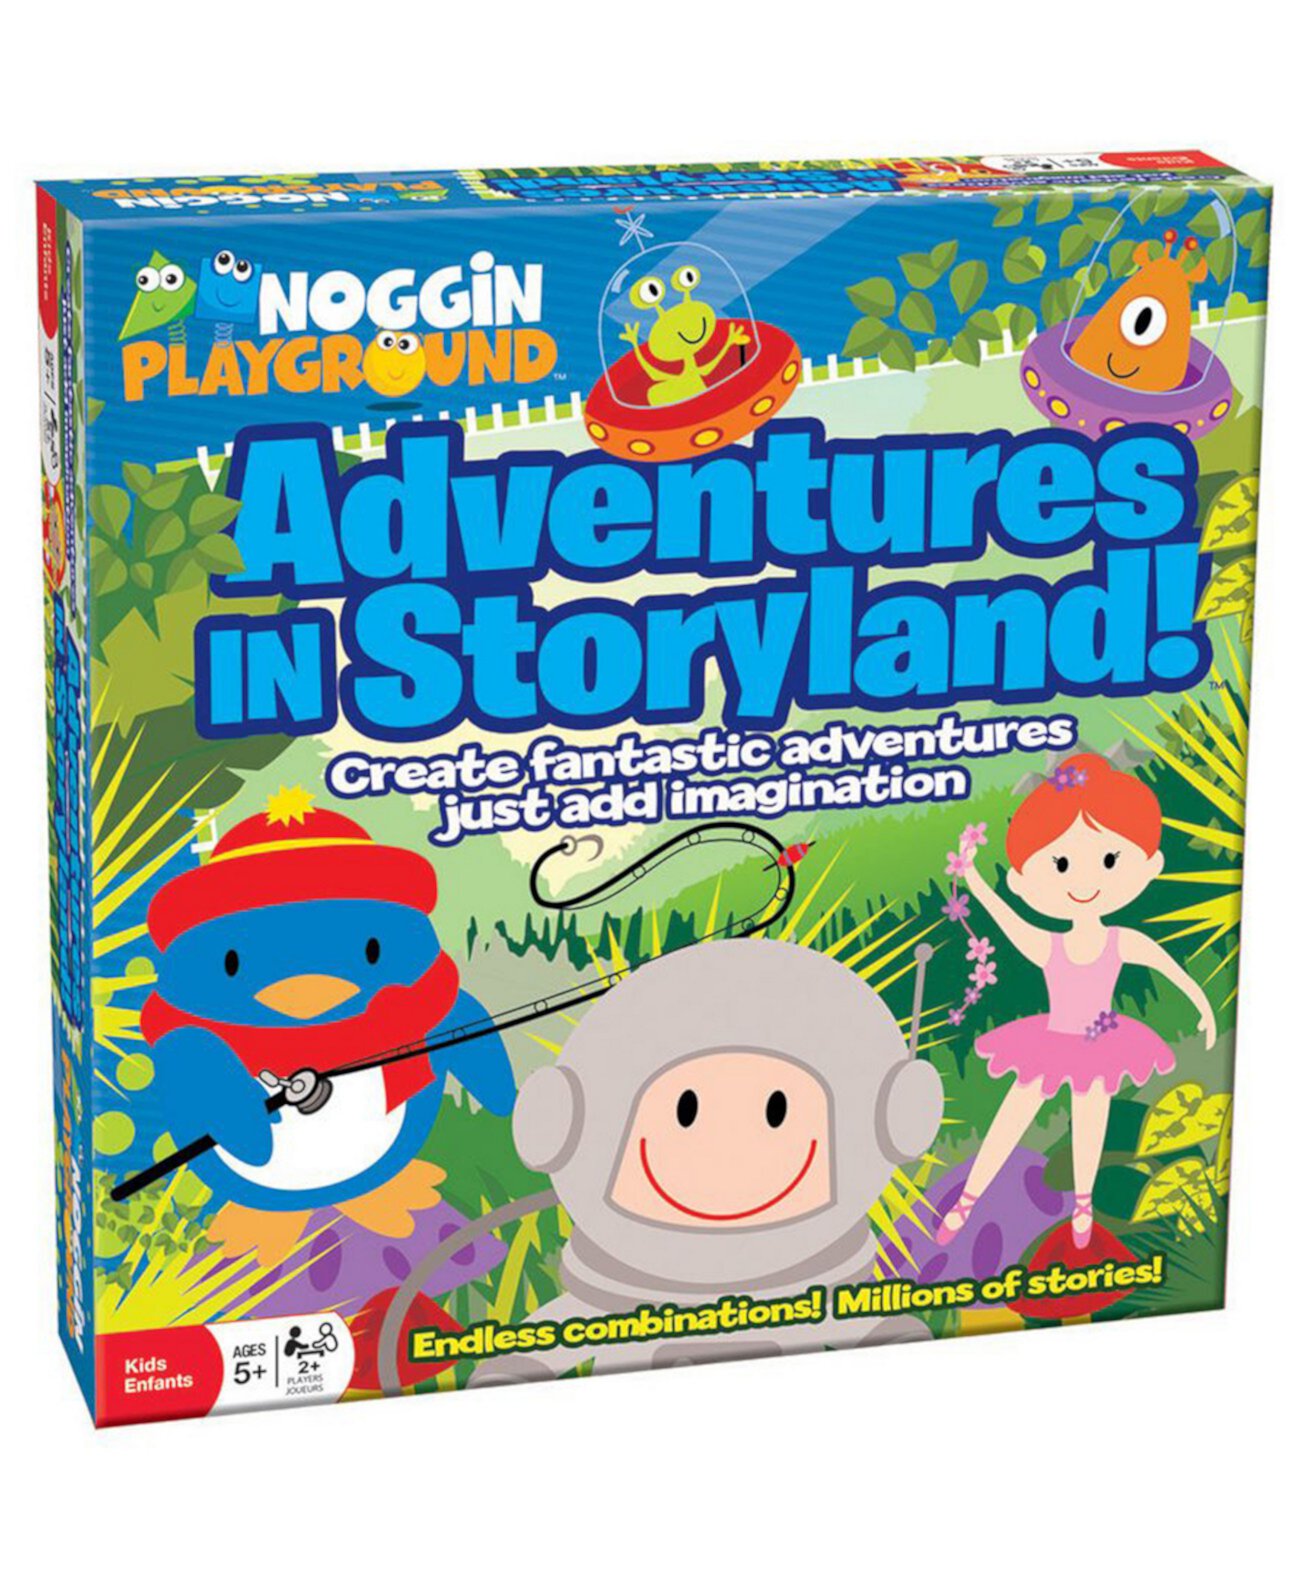 Приключения в Storyland! Noggin Playground